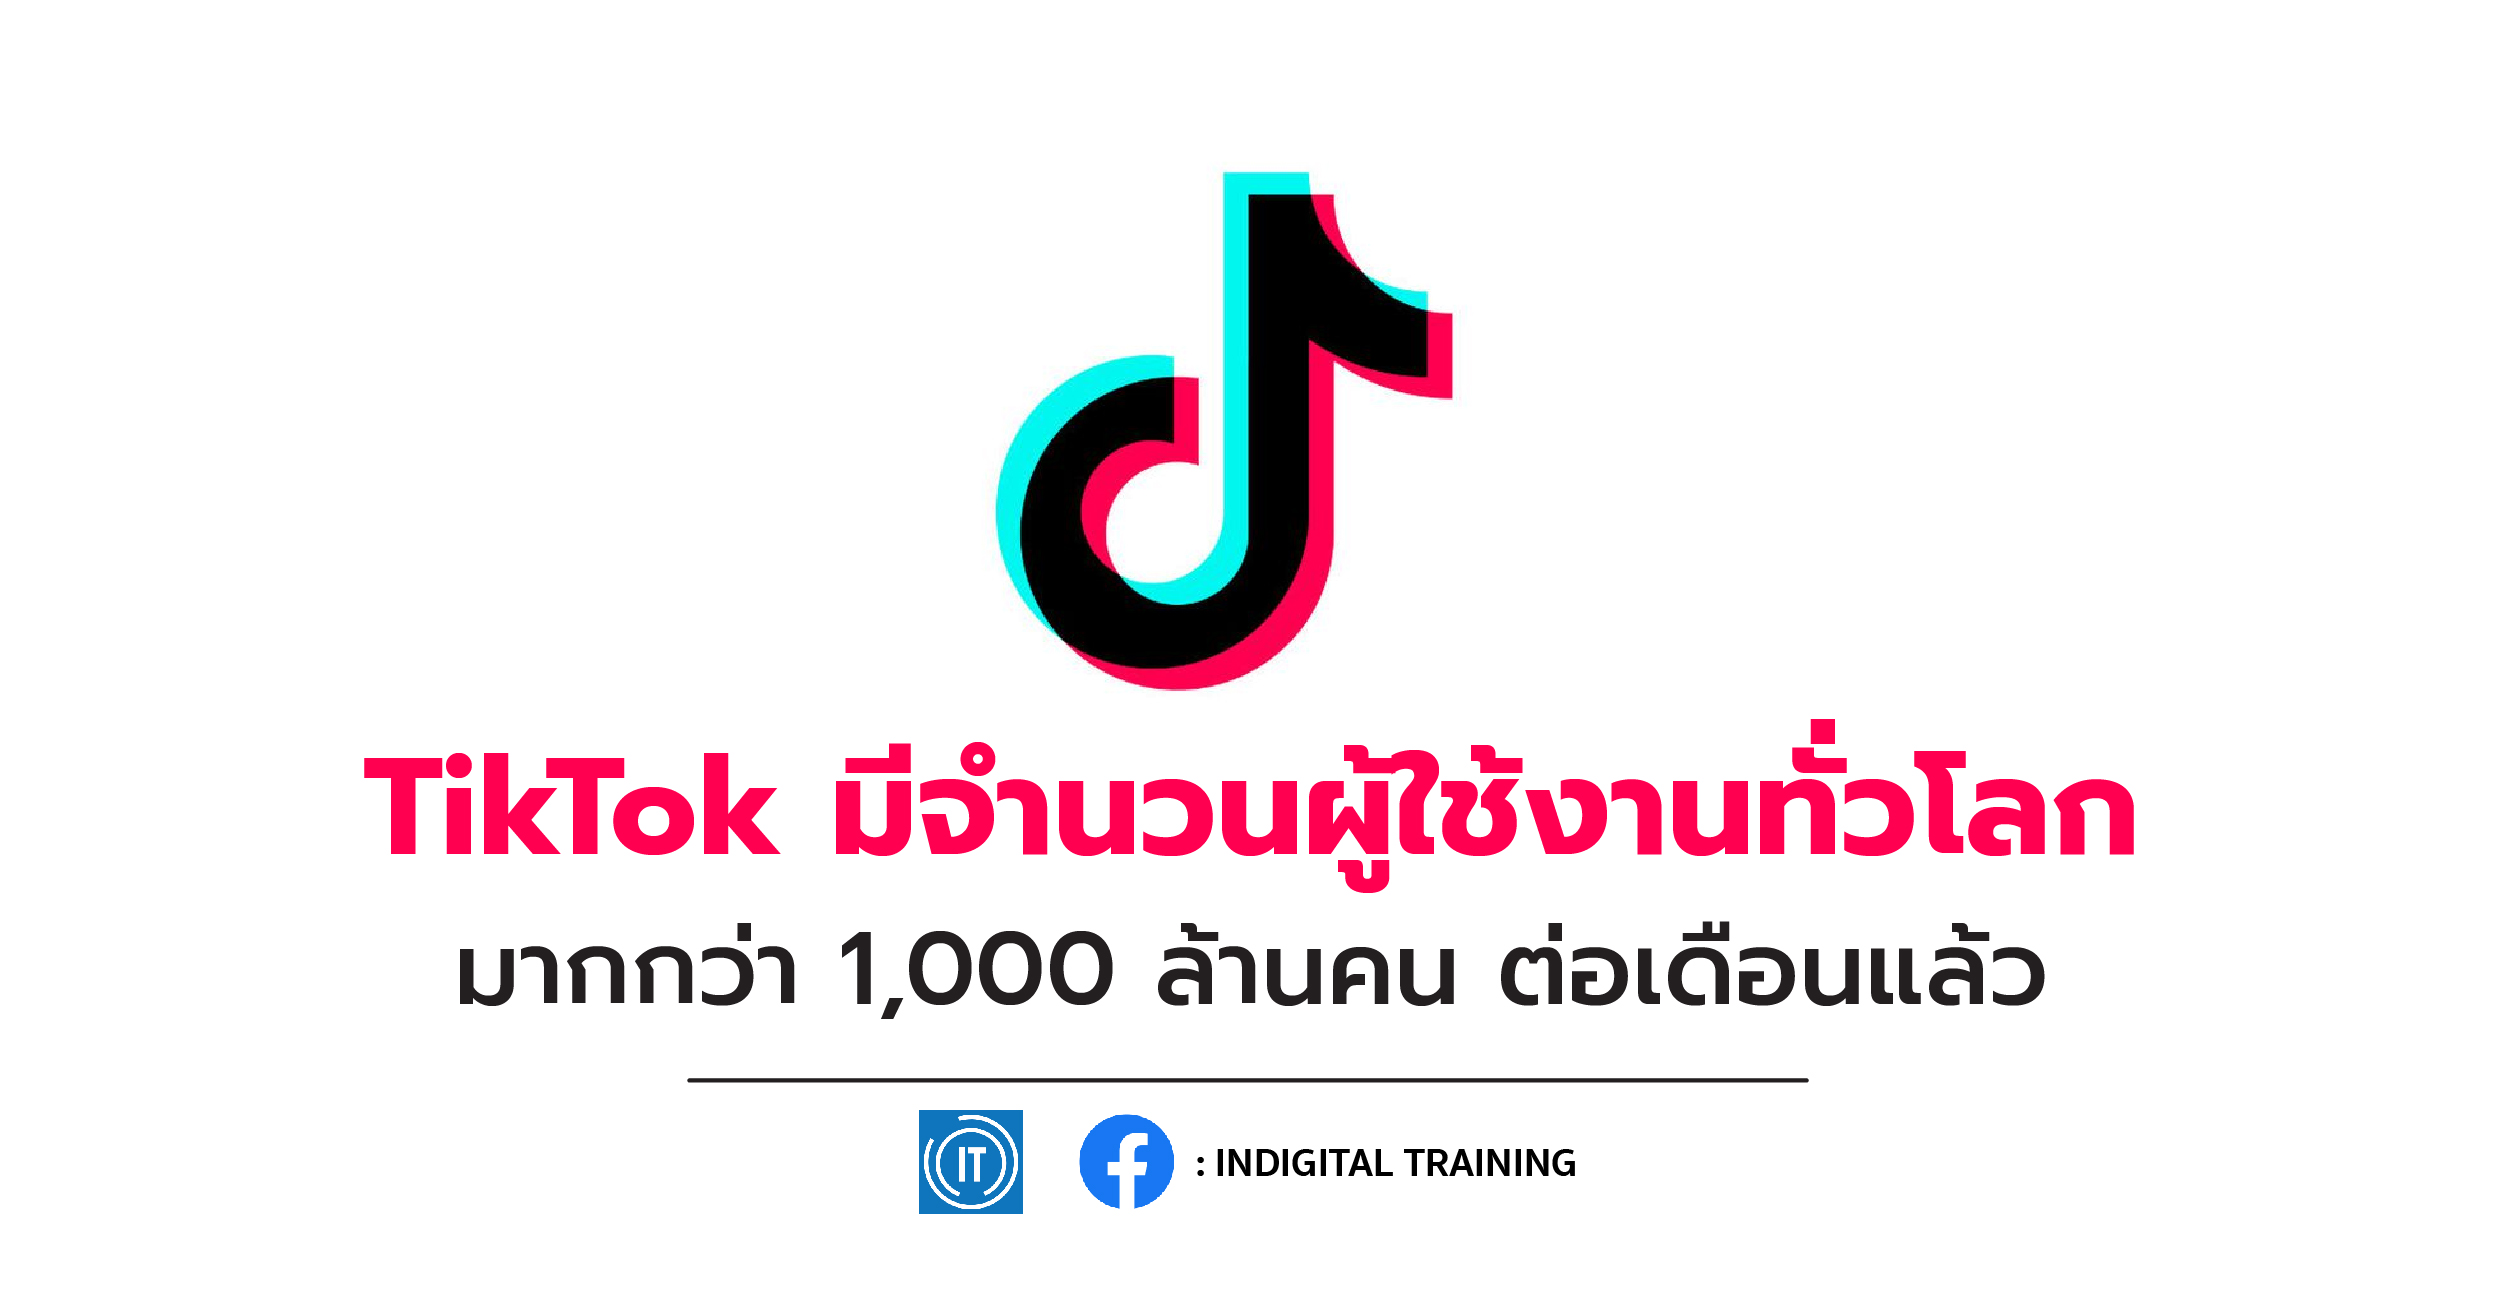 TikTok มีจำนวนผู้ใช้งานทั่วโลกมากกว่า 1,000 ล้านคน ต่อเดือนแล้ว